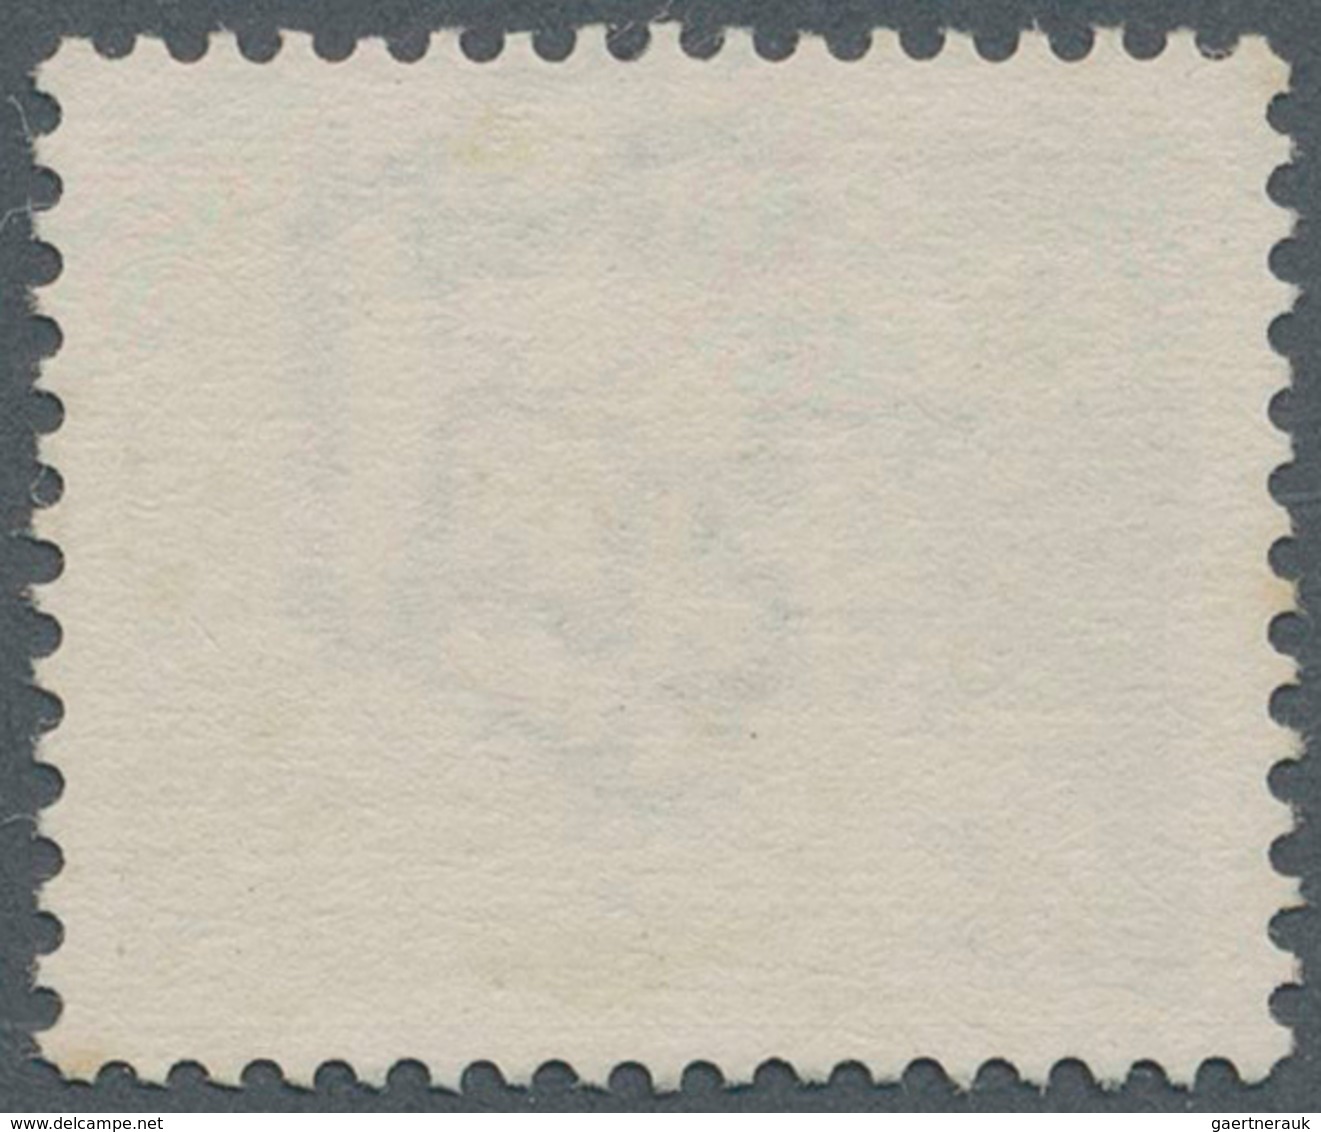 Dt. Besetzung II WK - Zara: 1943, 2,55 L Schwarzgrünblau, Aufdruck In Type IV, Entwertet Mit Stempel - Occupation 1938-45